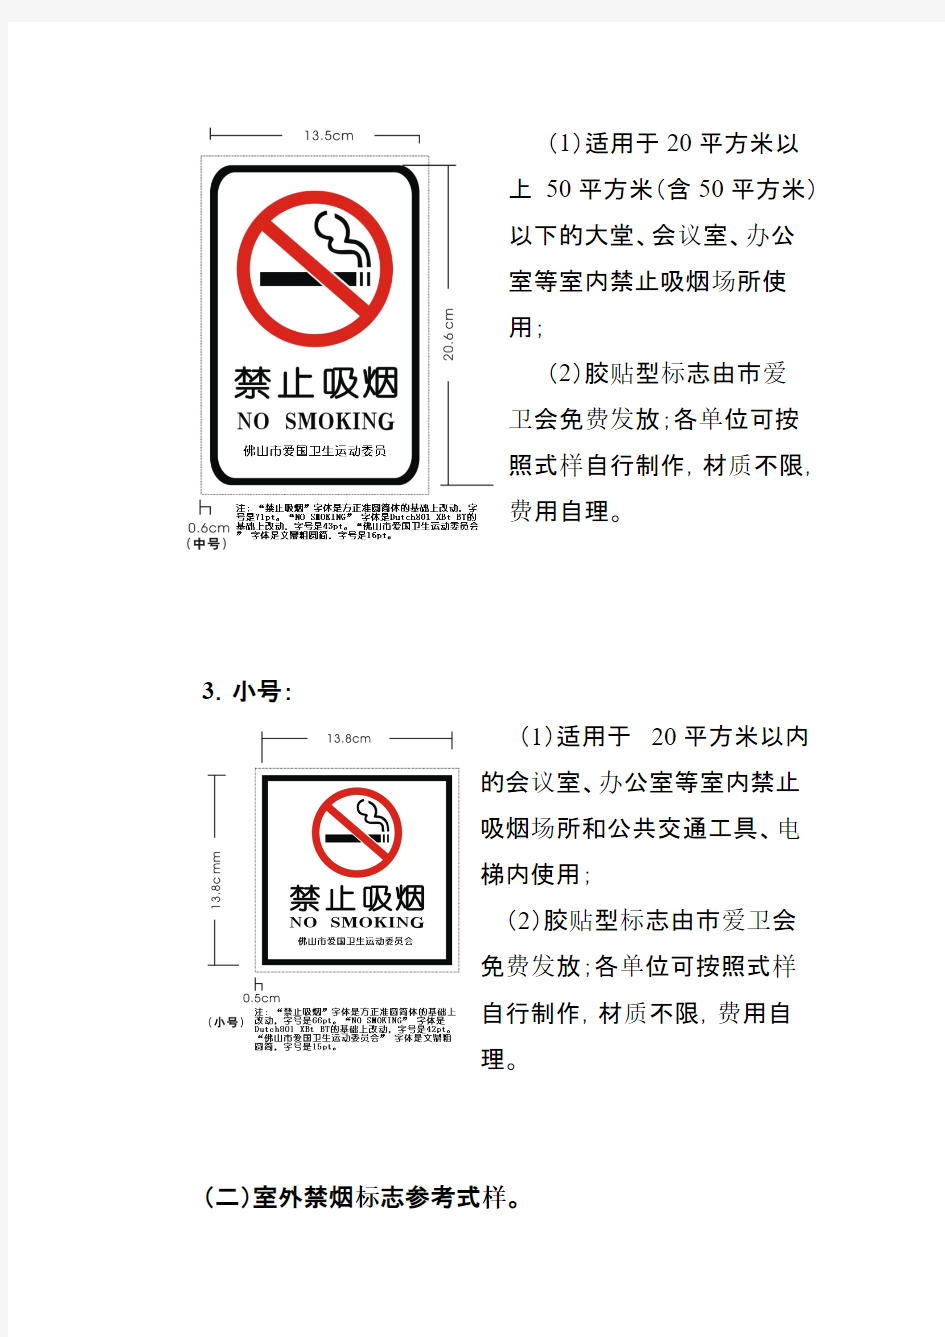 创文禁止吸烟标记警示标识制作标准与张贴规范